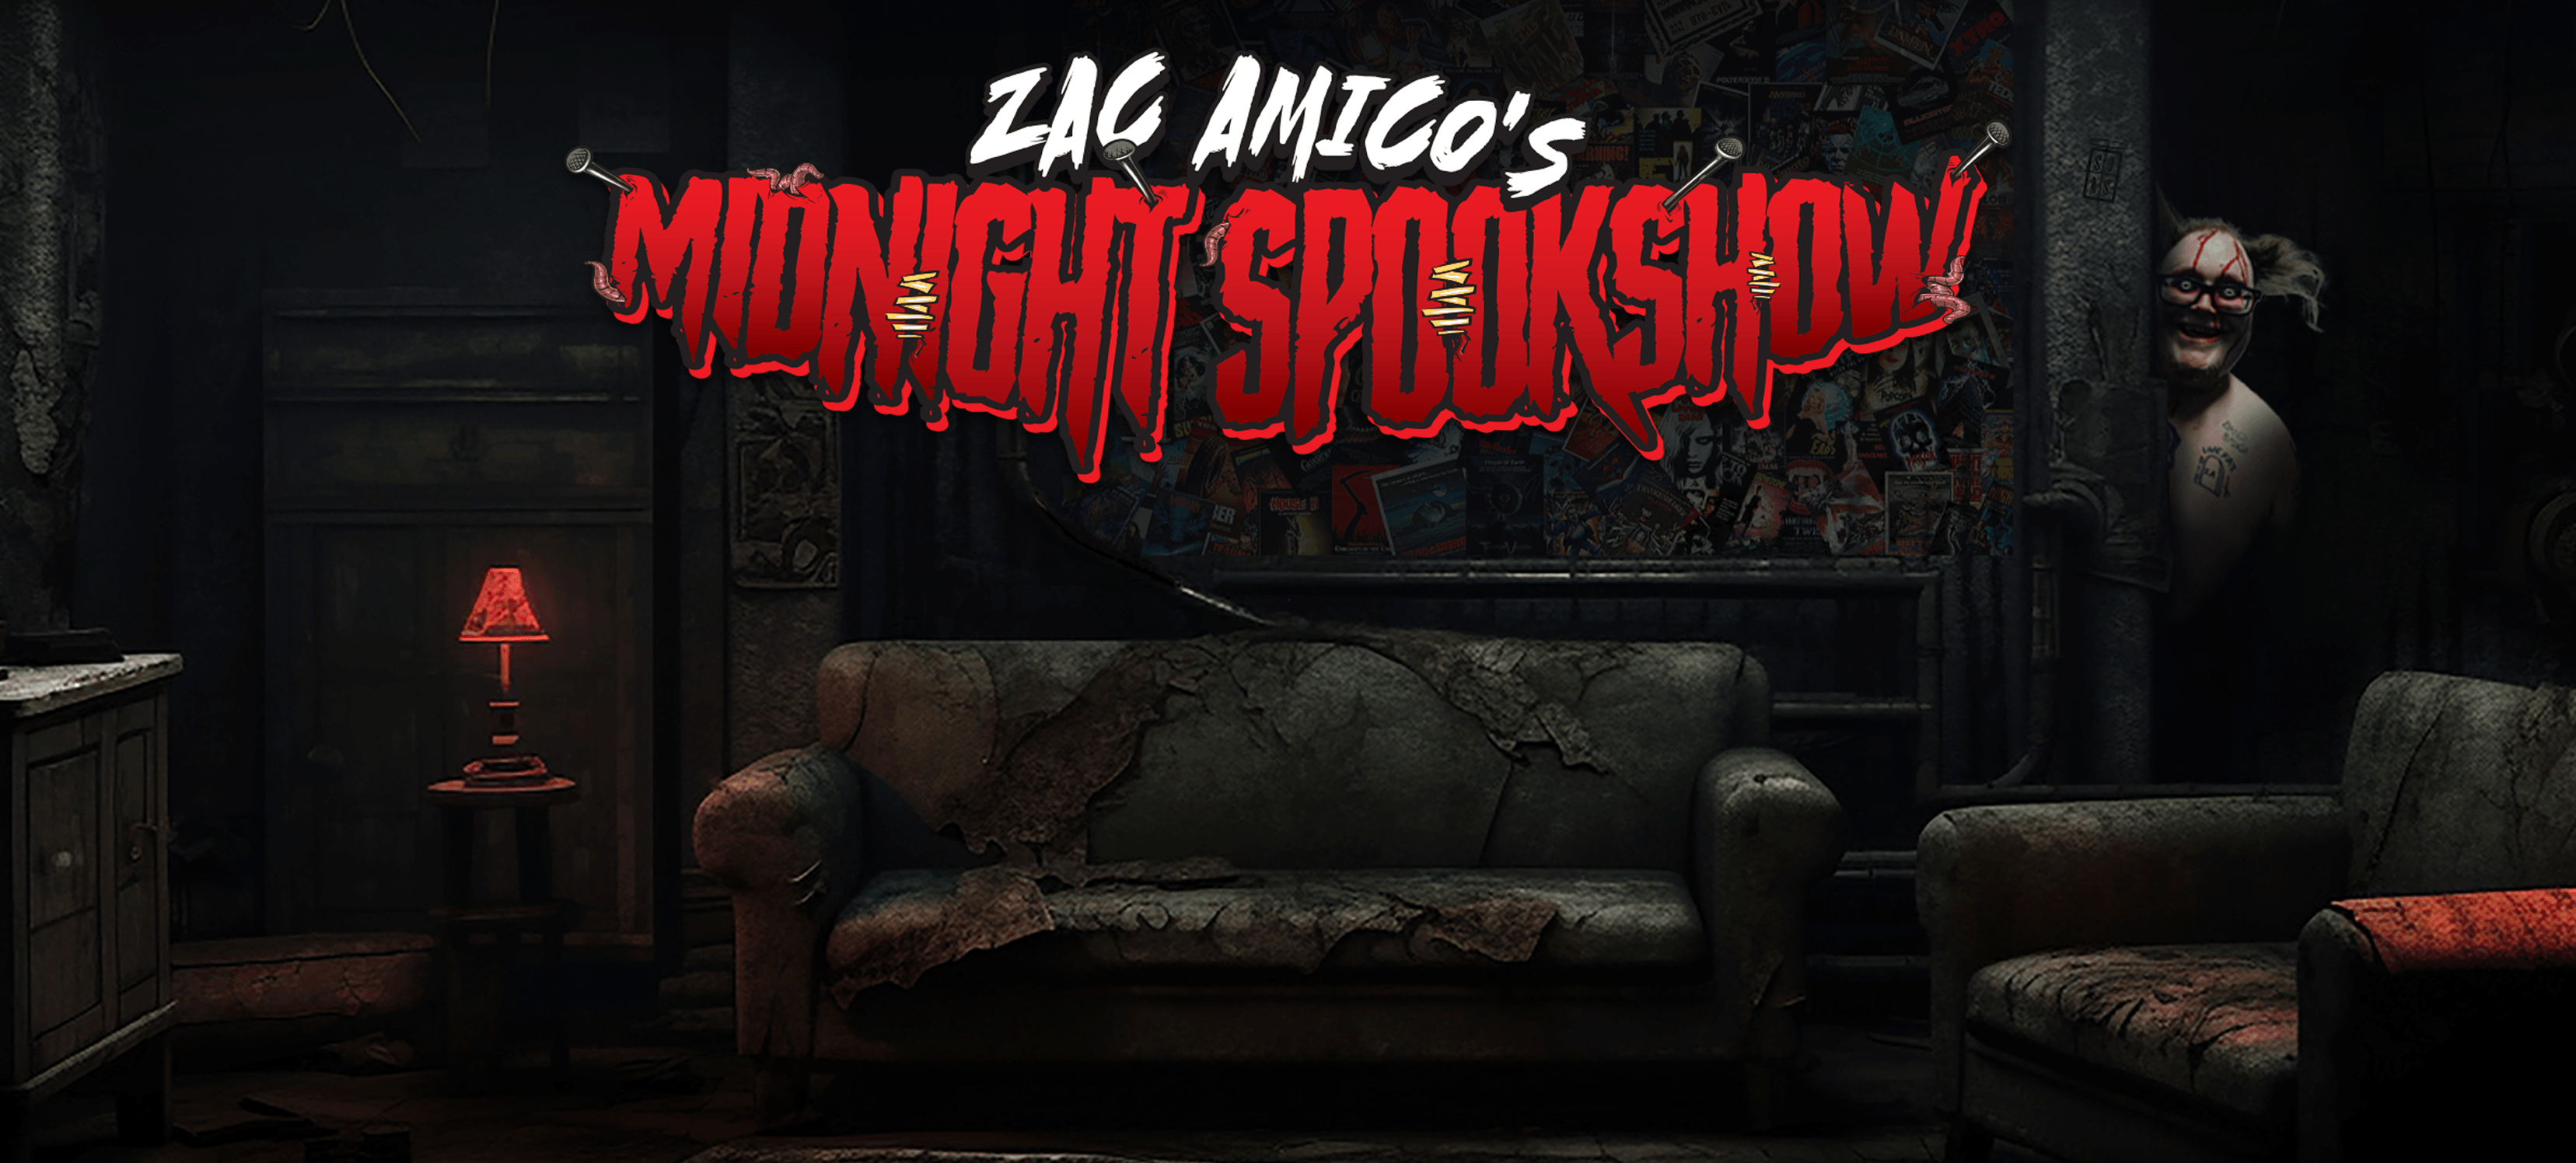 Zac Amico’s Midnight Spook Show